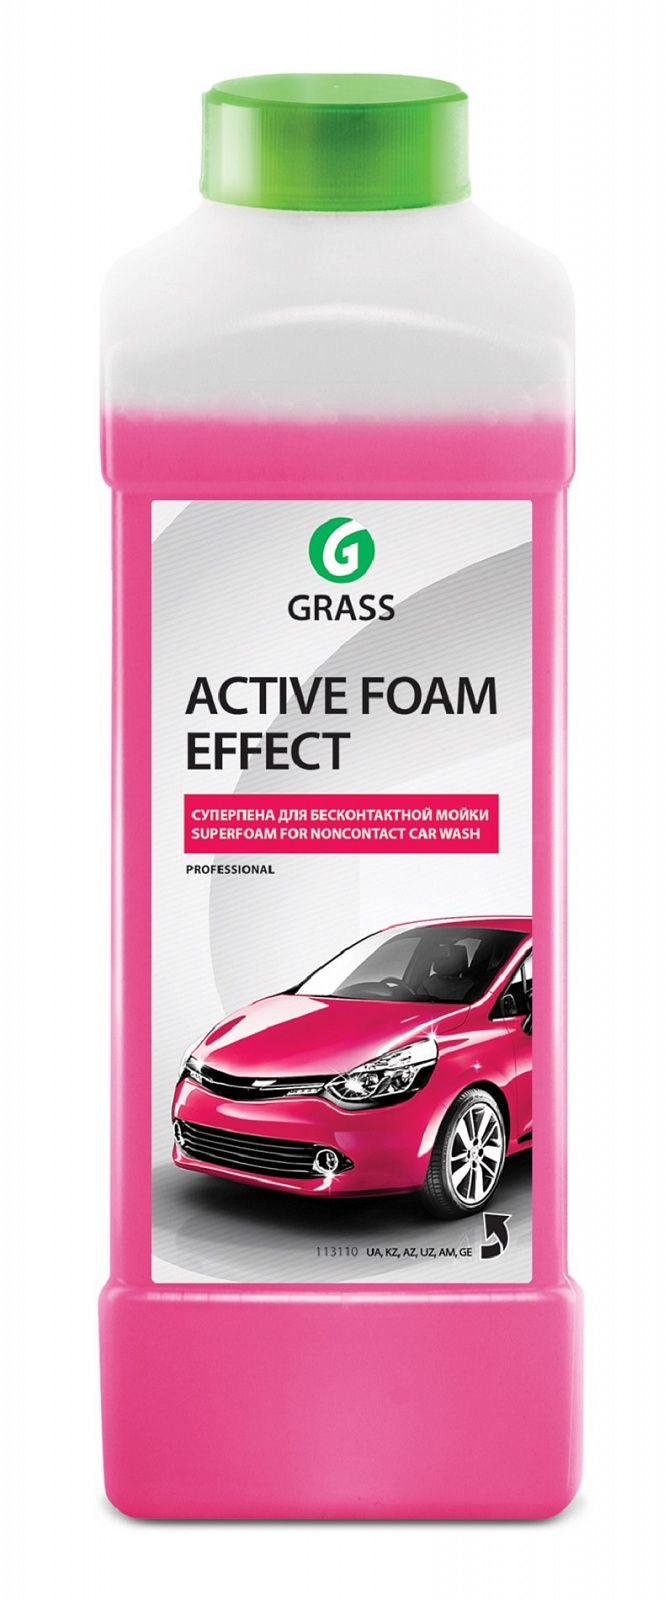 Grass foam gel. Активная пена для бесконтактной мойки grass. Шампунь для беск. Мойки Active Foam Power (6л). 113180 Grass. Автошампунь для дизайнеров.